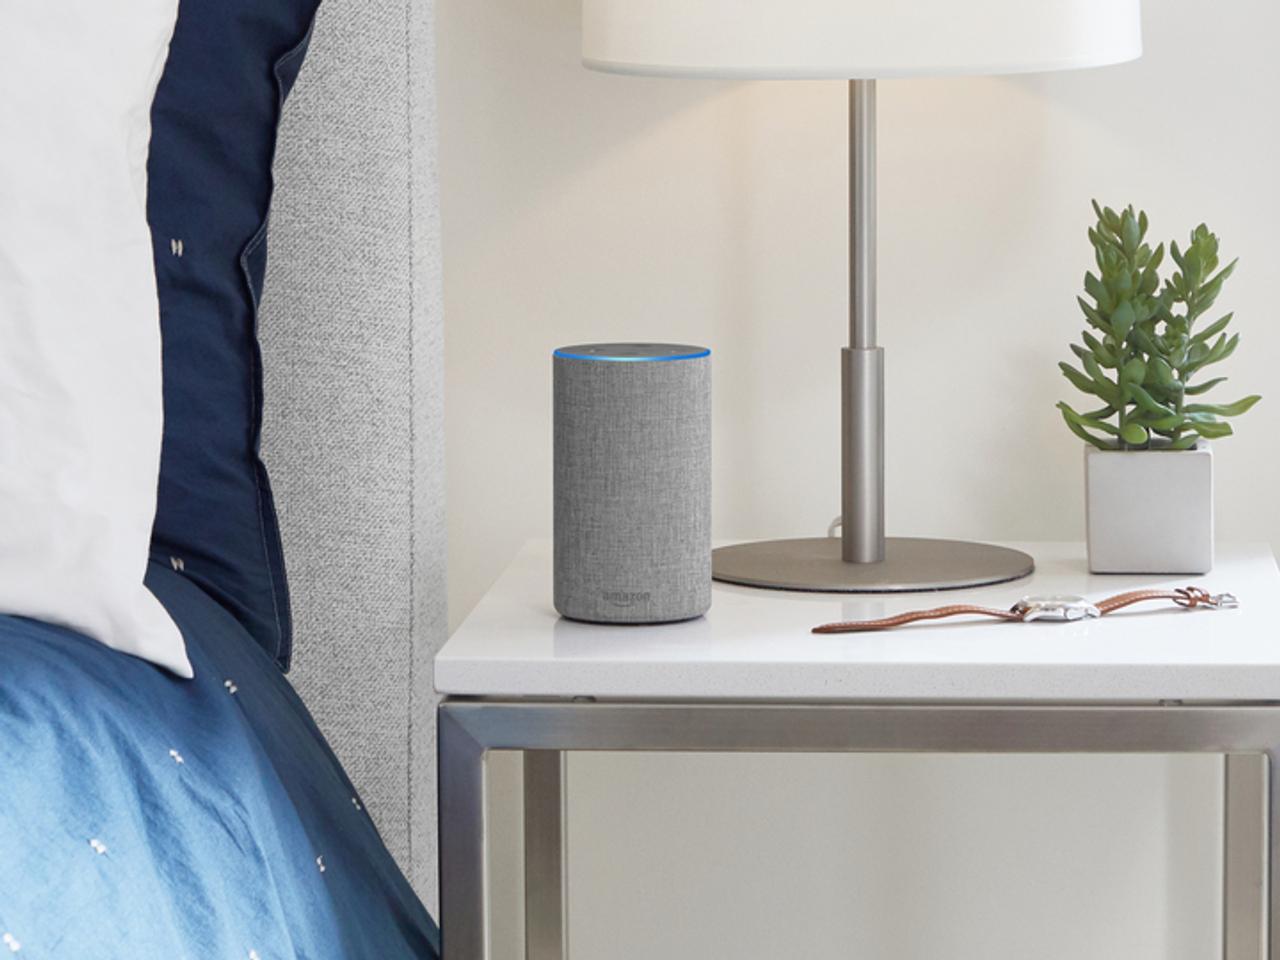 Alexaが本を読みあげてくれる新機能。Amazon Echoで本との関係が変わる？